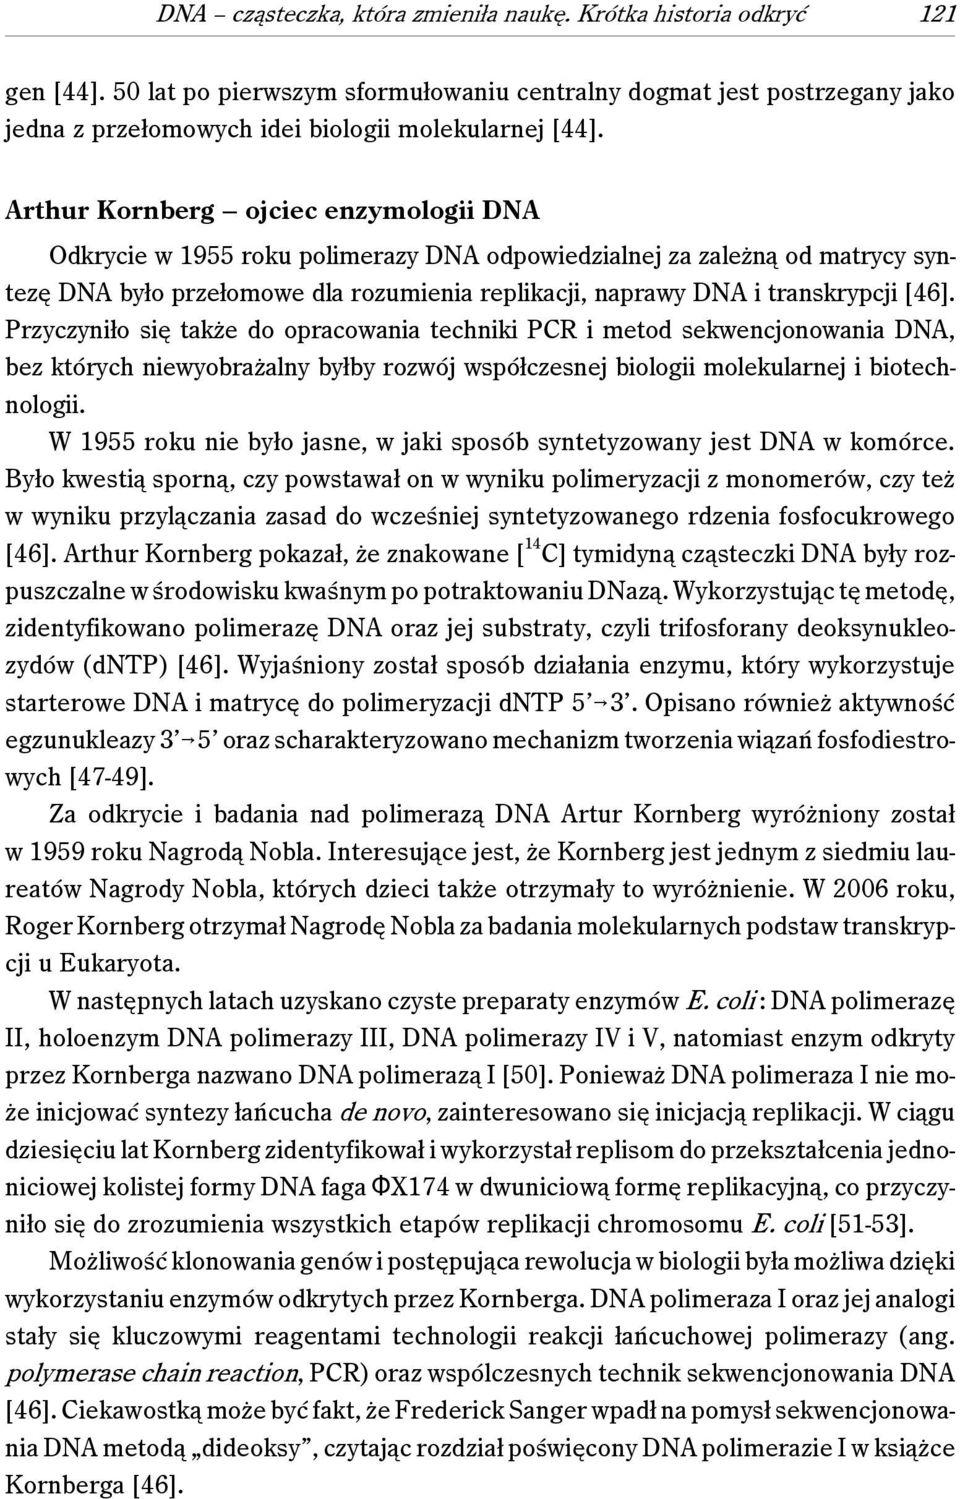 Arthur Kornberg ojciec enzymologii DNA Odkrycie w 1955 roku polimerazy DNA odpowiedzialnej za zależną od matrycy syntezę DNA było przełomowe dla rozumienia replikacji, naprawy DNA i transkrypcji [46].